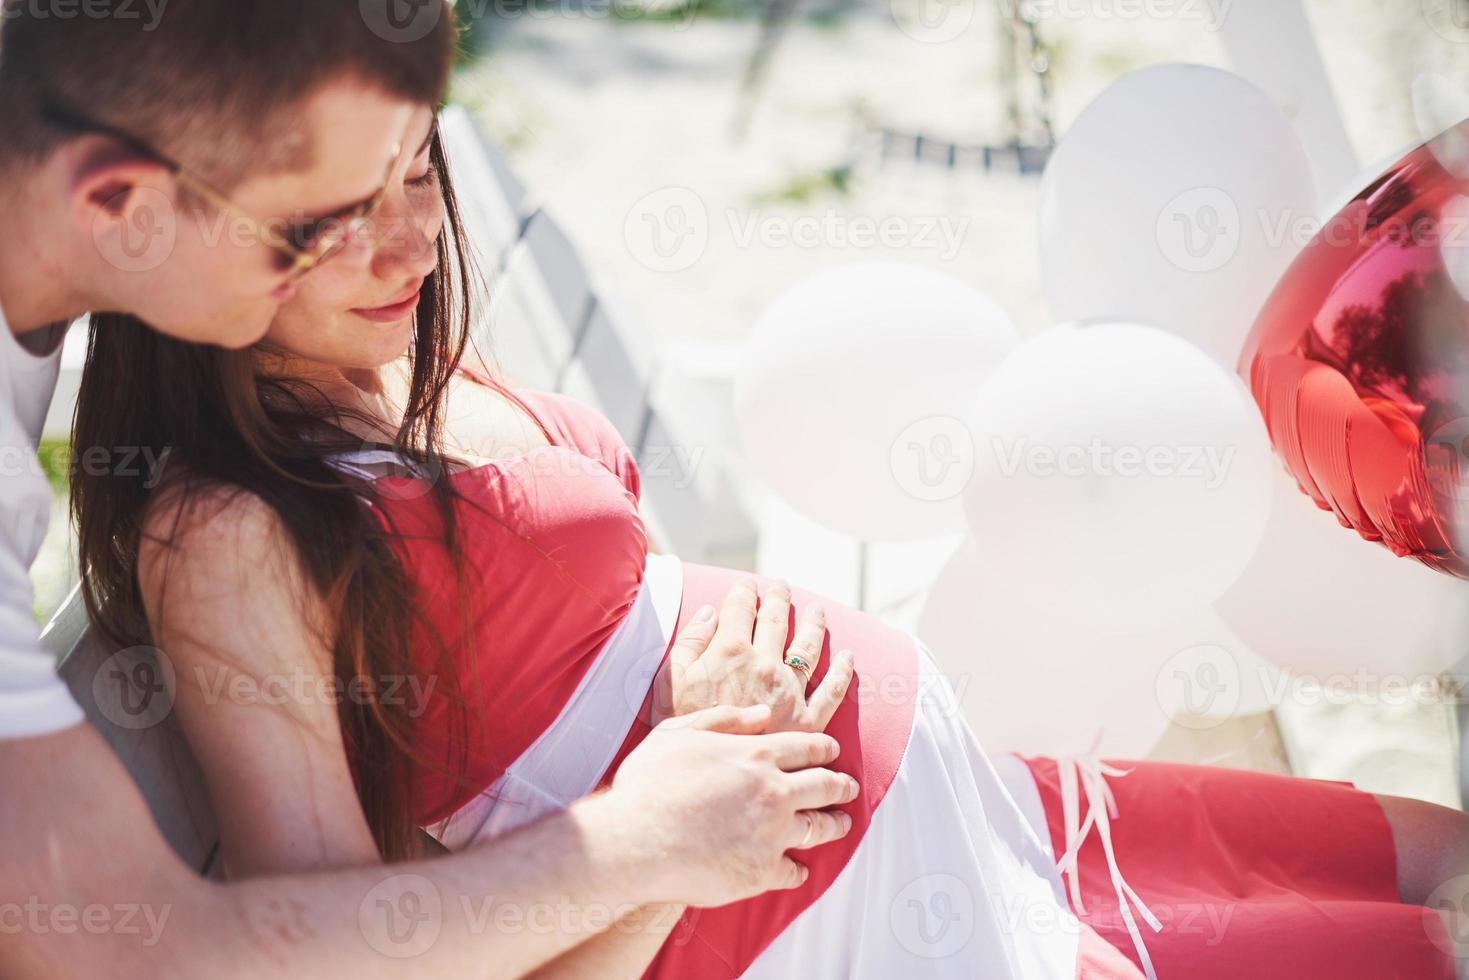 väntar bebis. gravid kvinna med älskad make sitter på en bänk. maken hand omfamnar en rund mage fru. föräldraskap. gravid kvinna i en vit klänning i körsbär med en röd rosett. närbild. nio månader foto